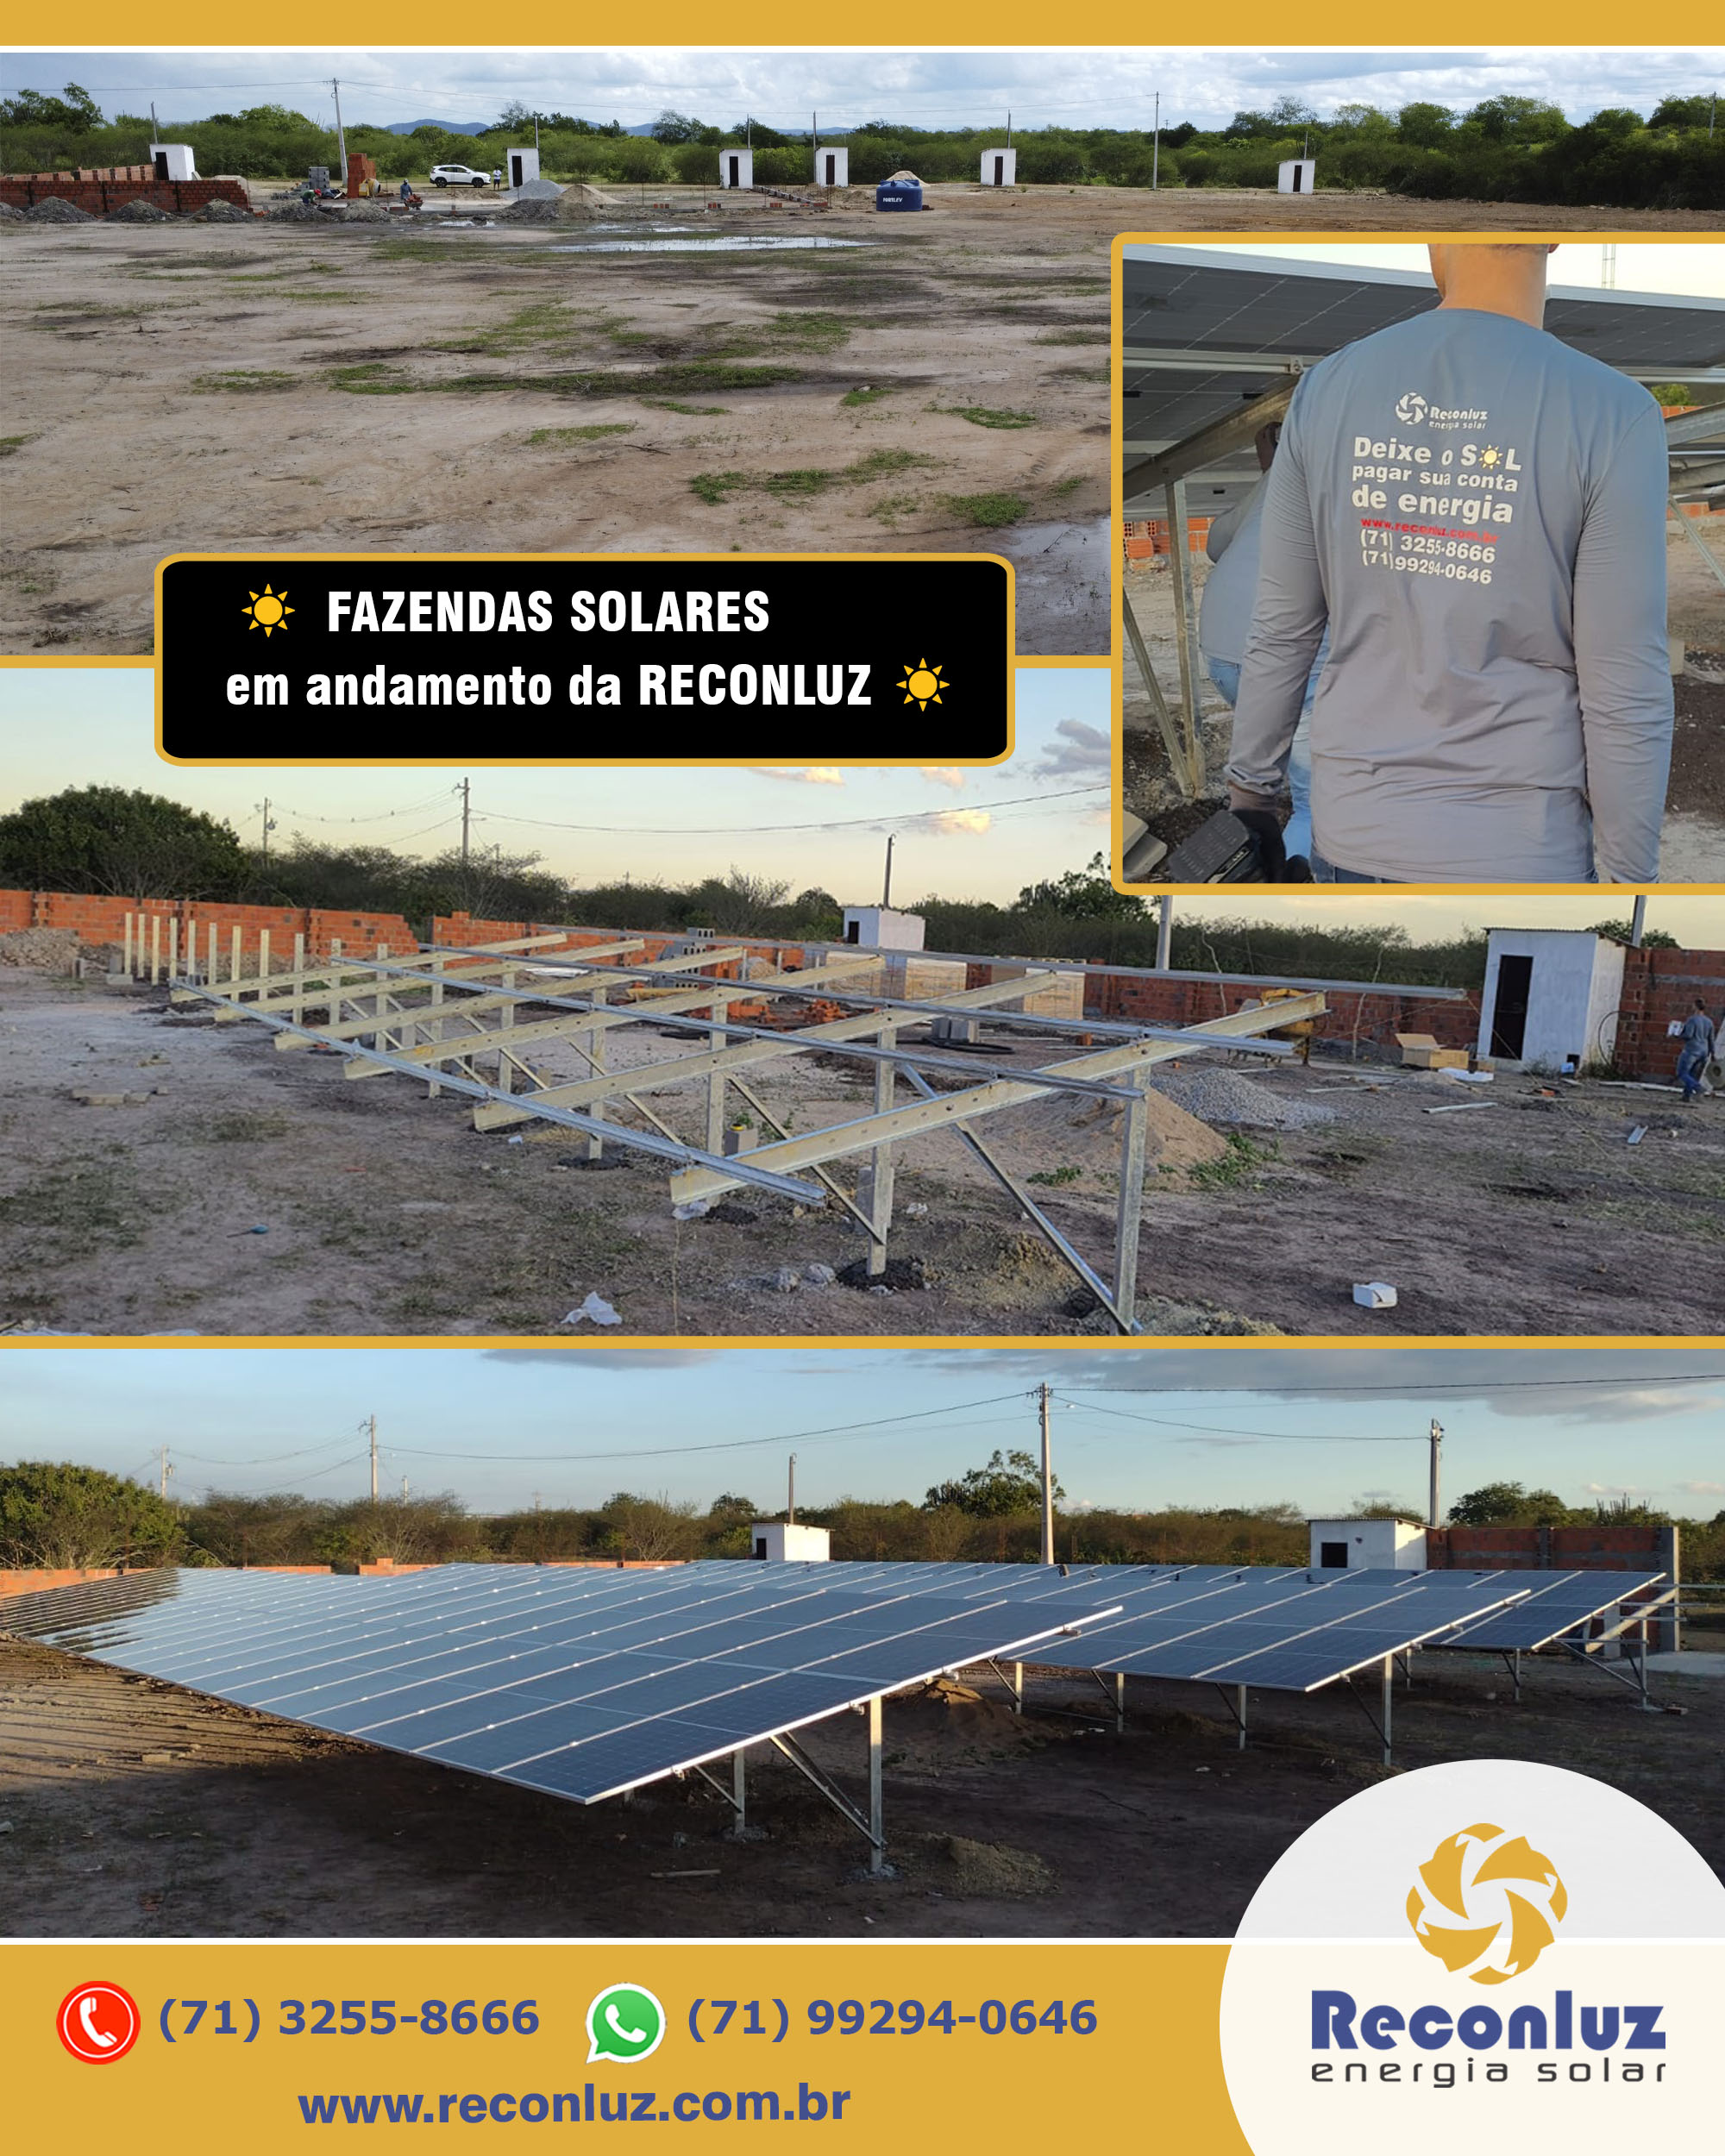 Fazenda Solar - Energia Solar - Reconluz - Salvador - Bahia